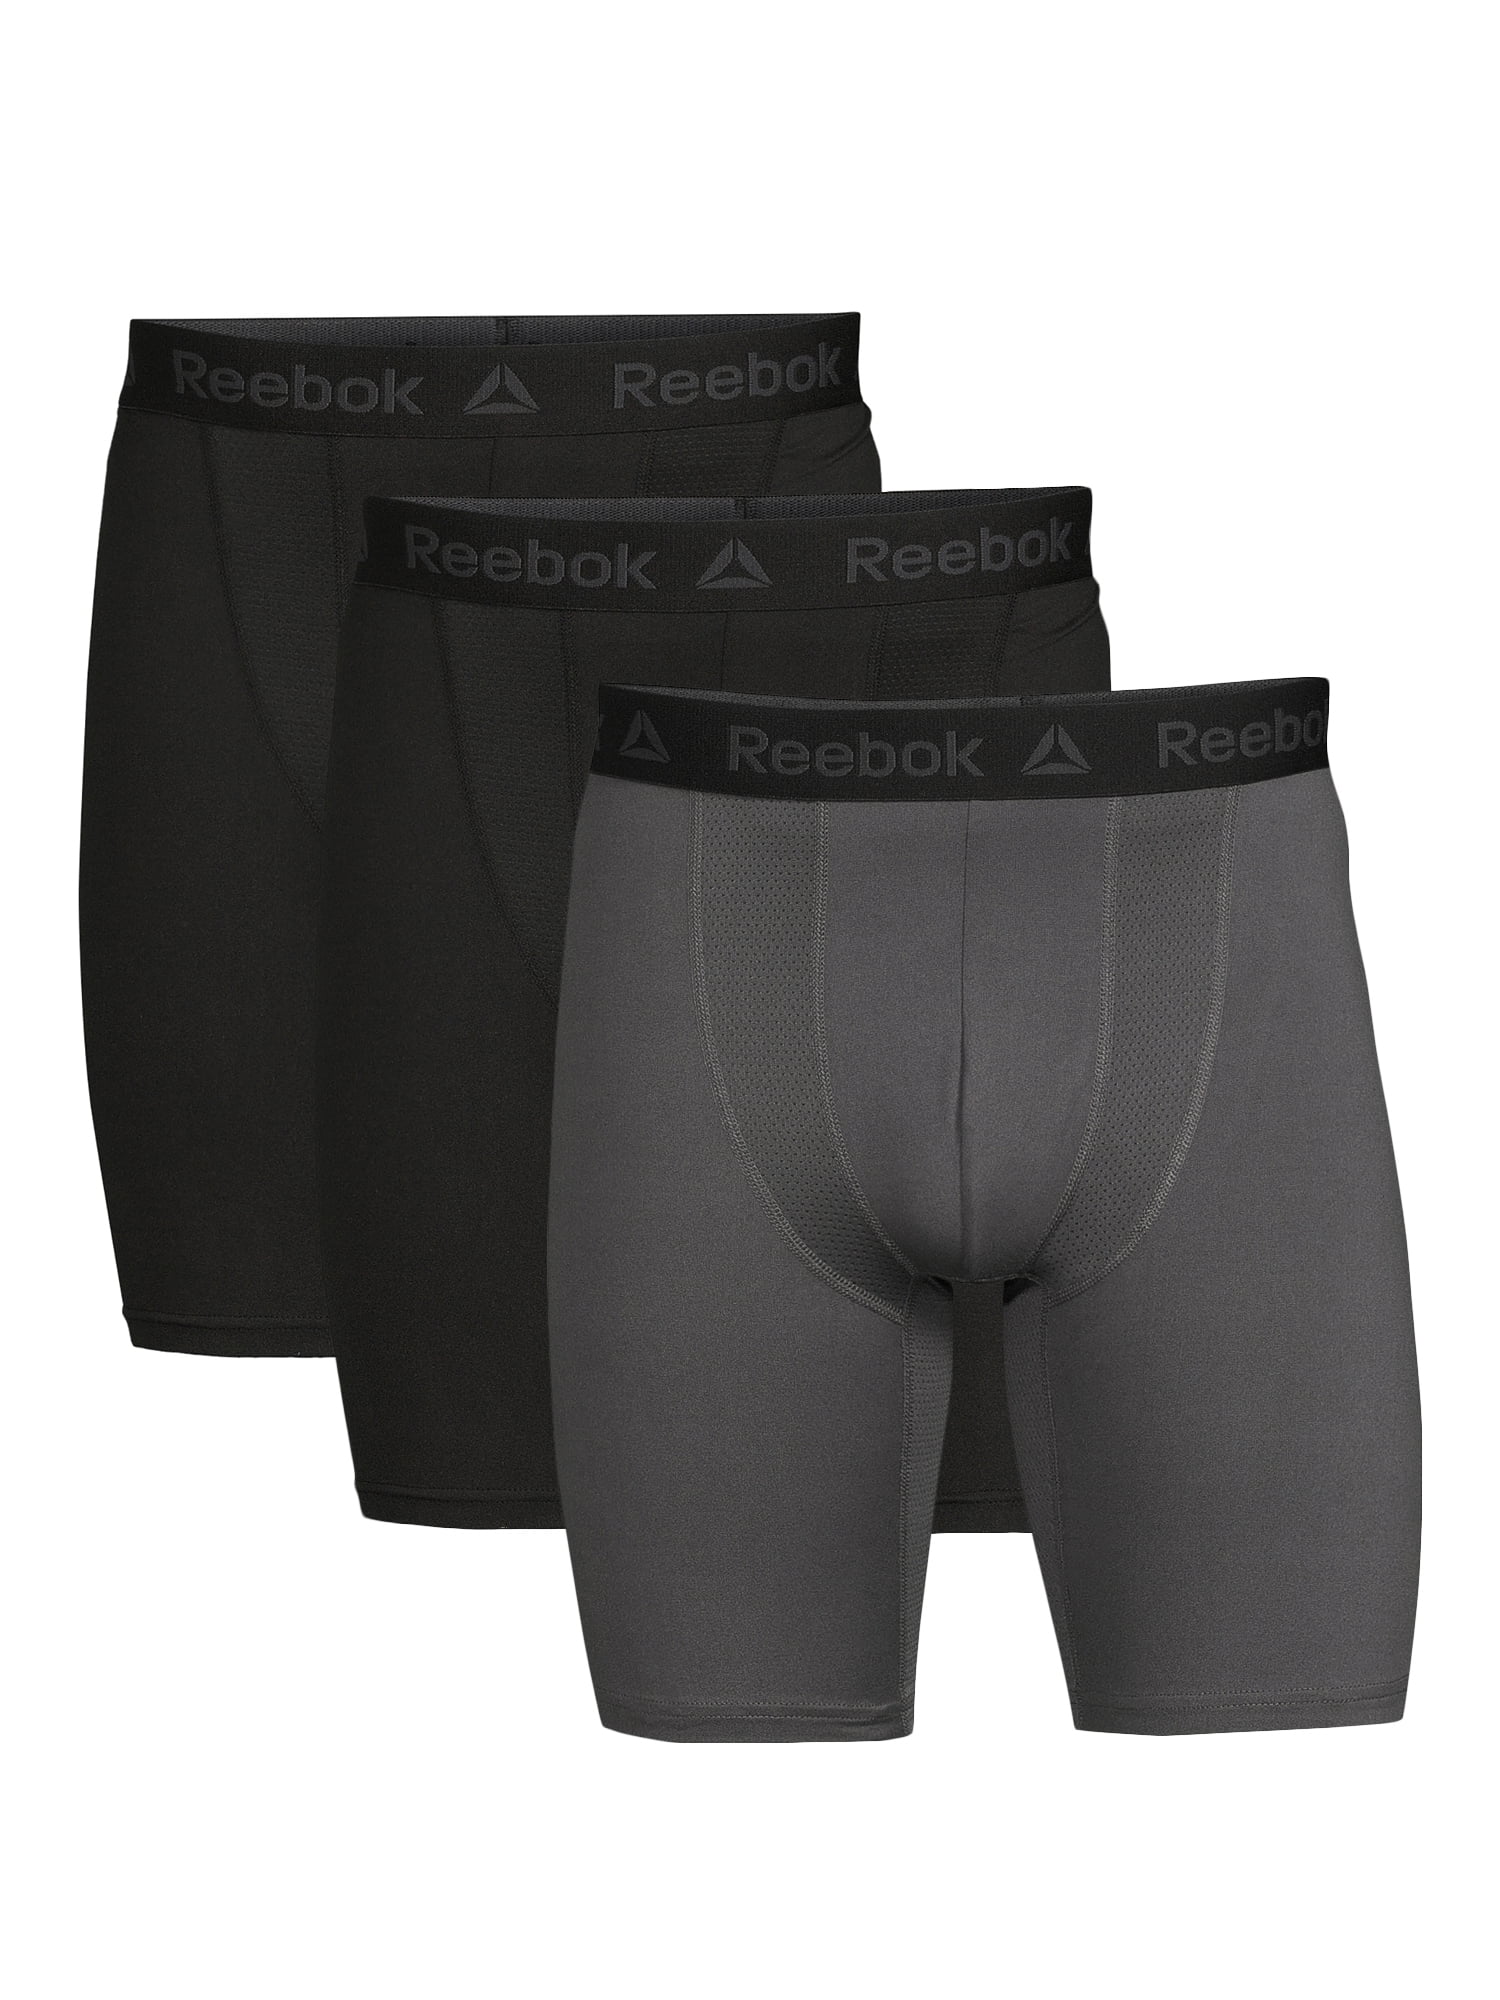 AND1 Men's Underwear Pro Platinum Boxer Briefs, 12 Pack!